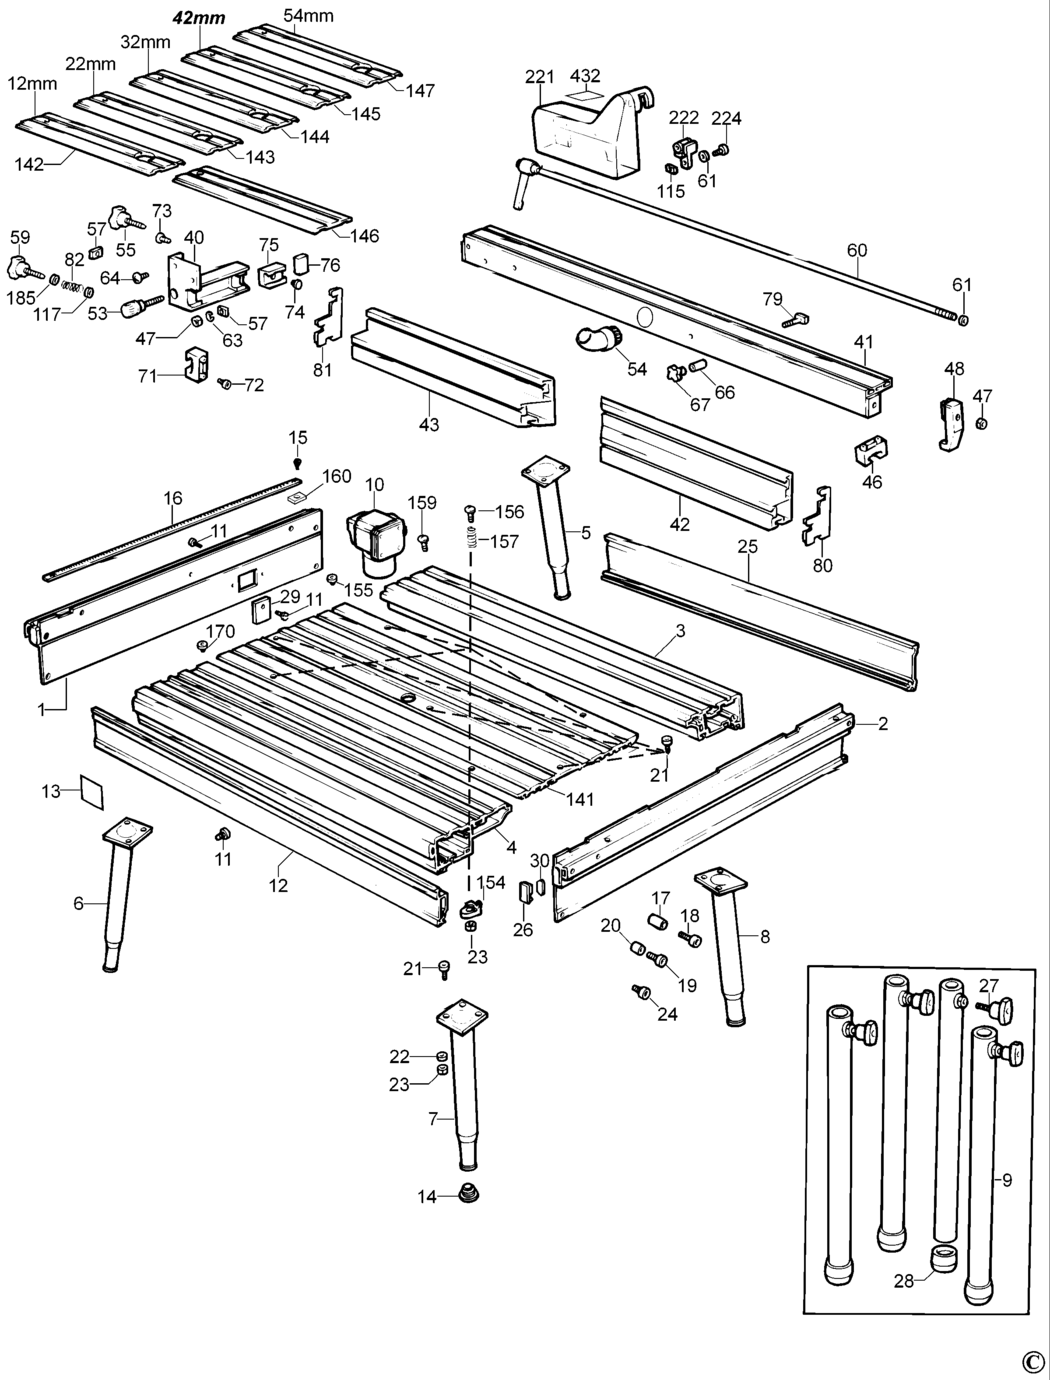 Dewalt DE2000 Type 1 Router Table Spare Parts